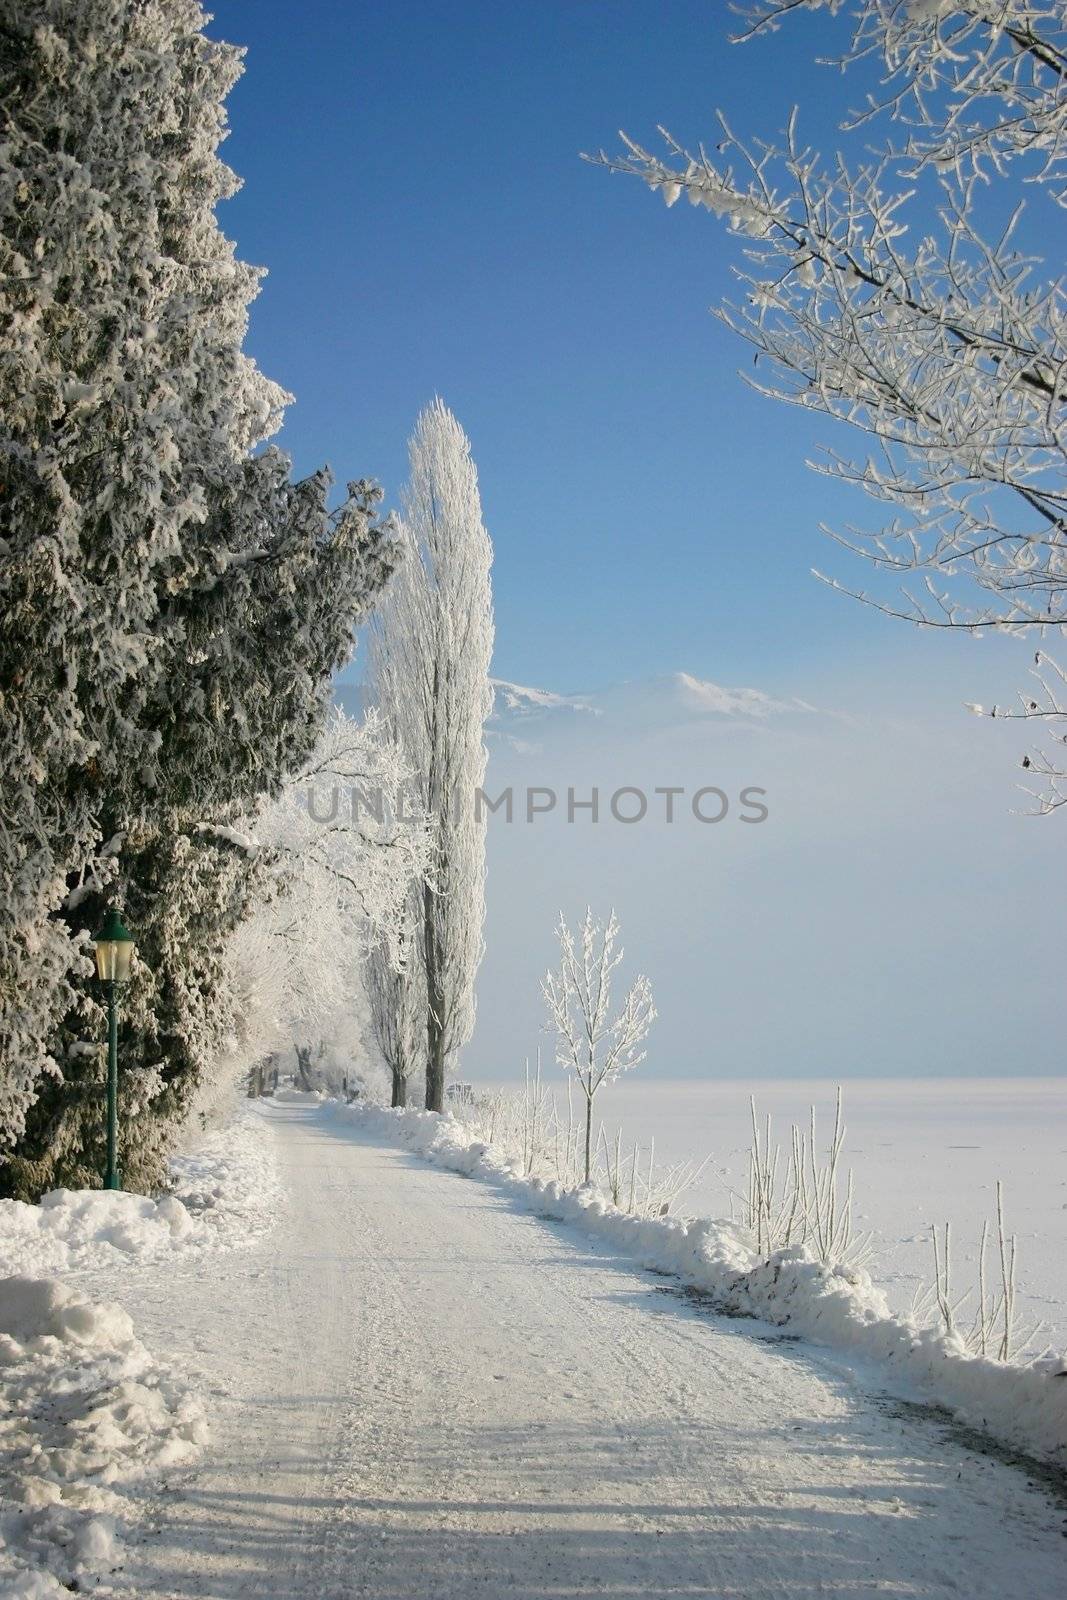 Frozen Road by Digoarpi